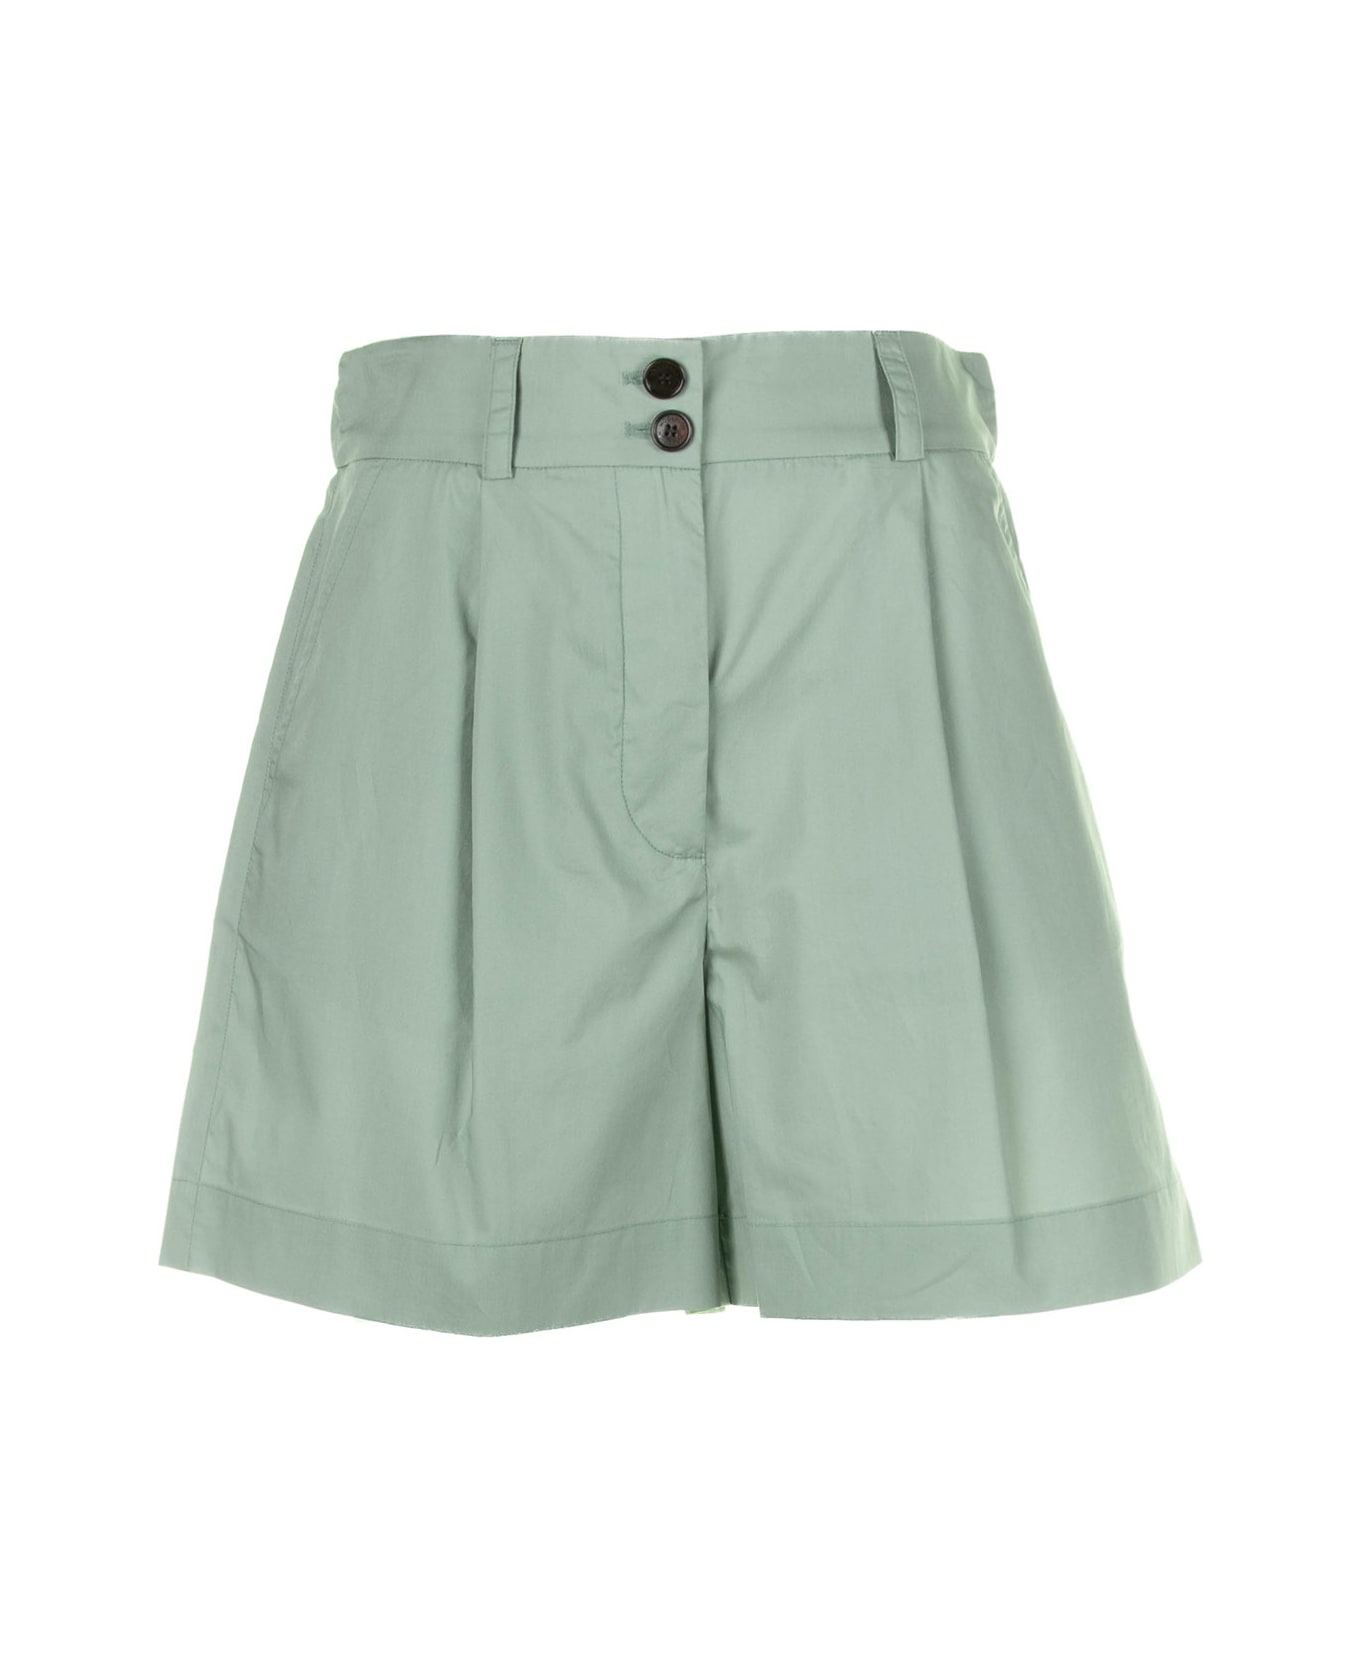 Woolrich Sage Green Cotton Shorts - SAGE